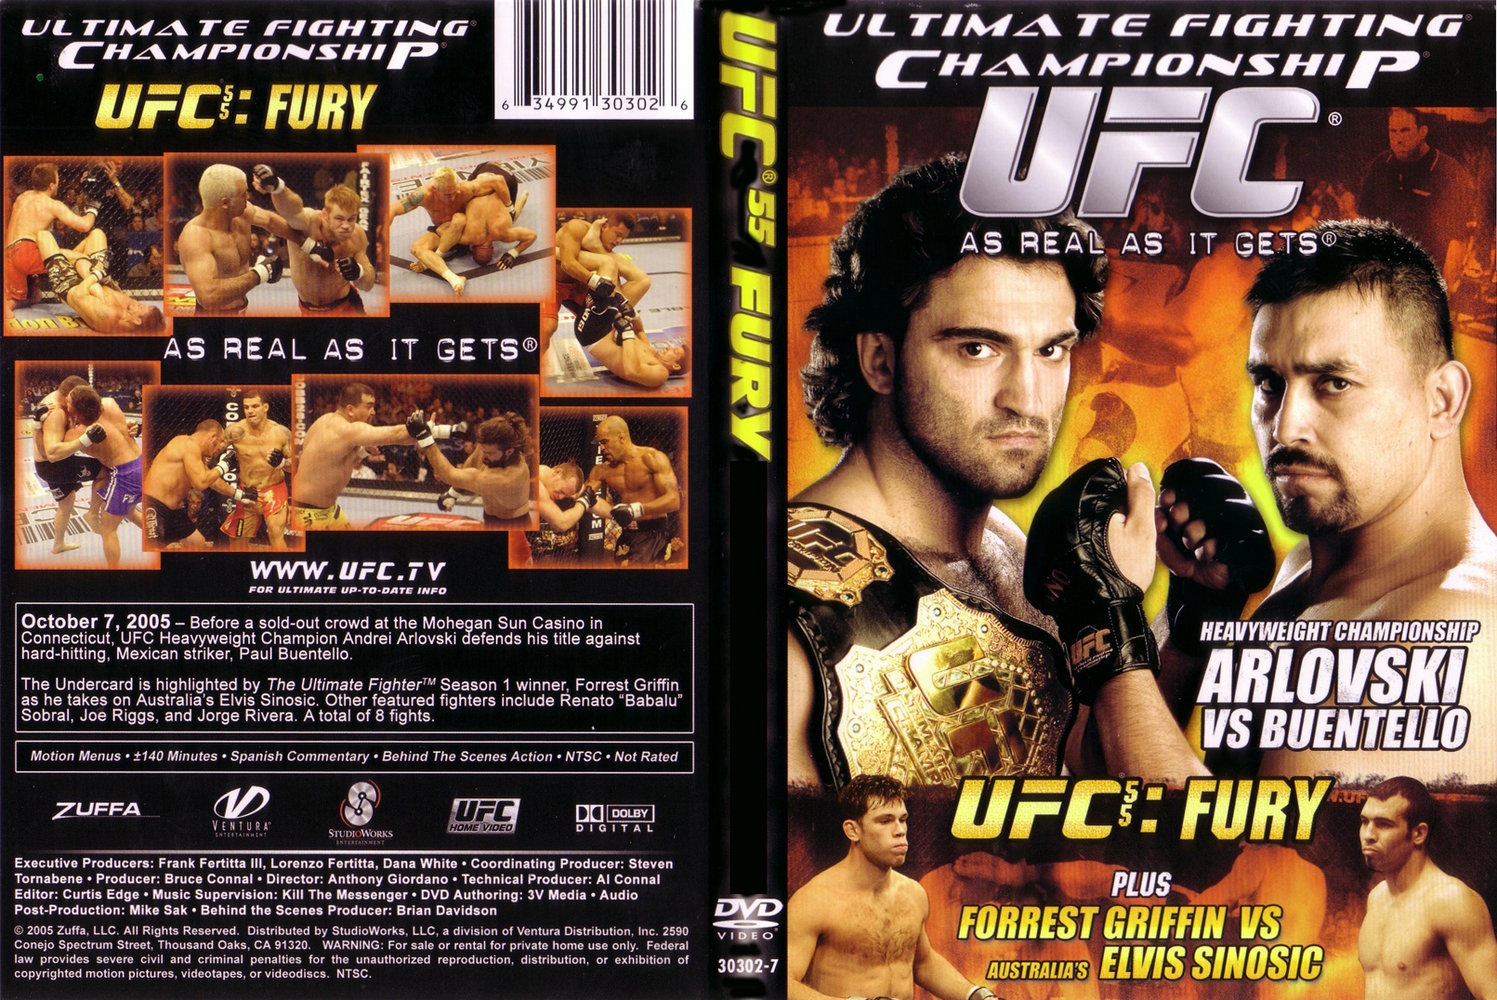 Jaquette DVD Ufc 55 Fury